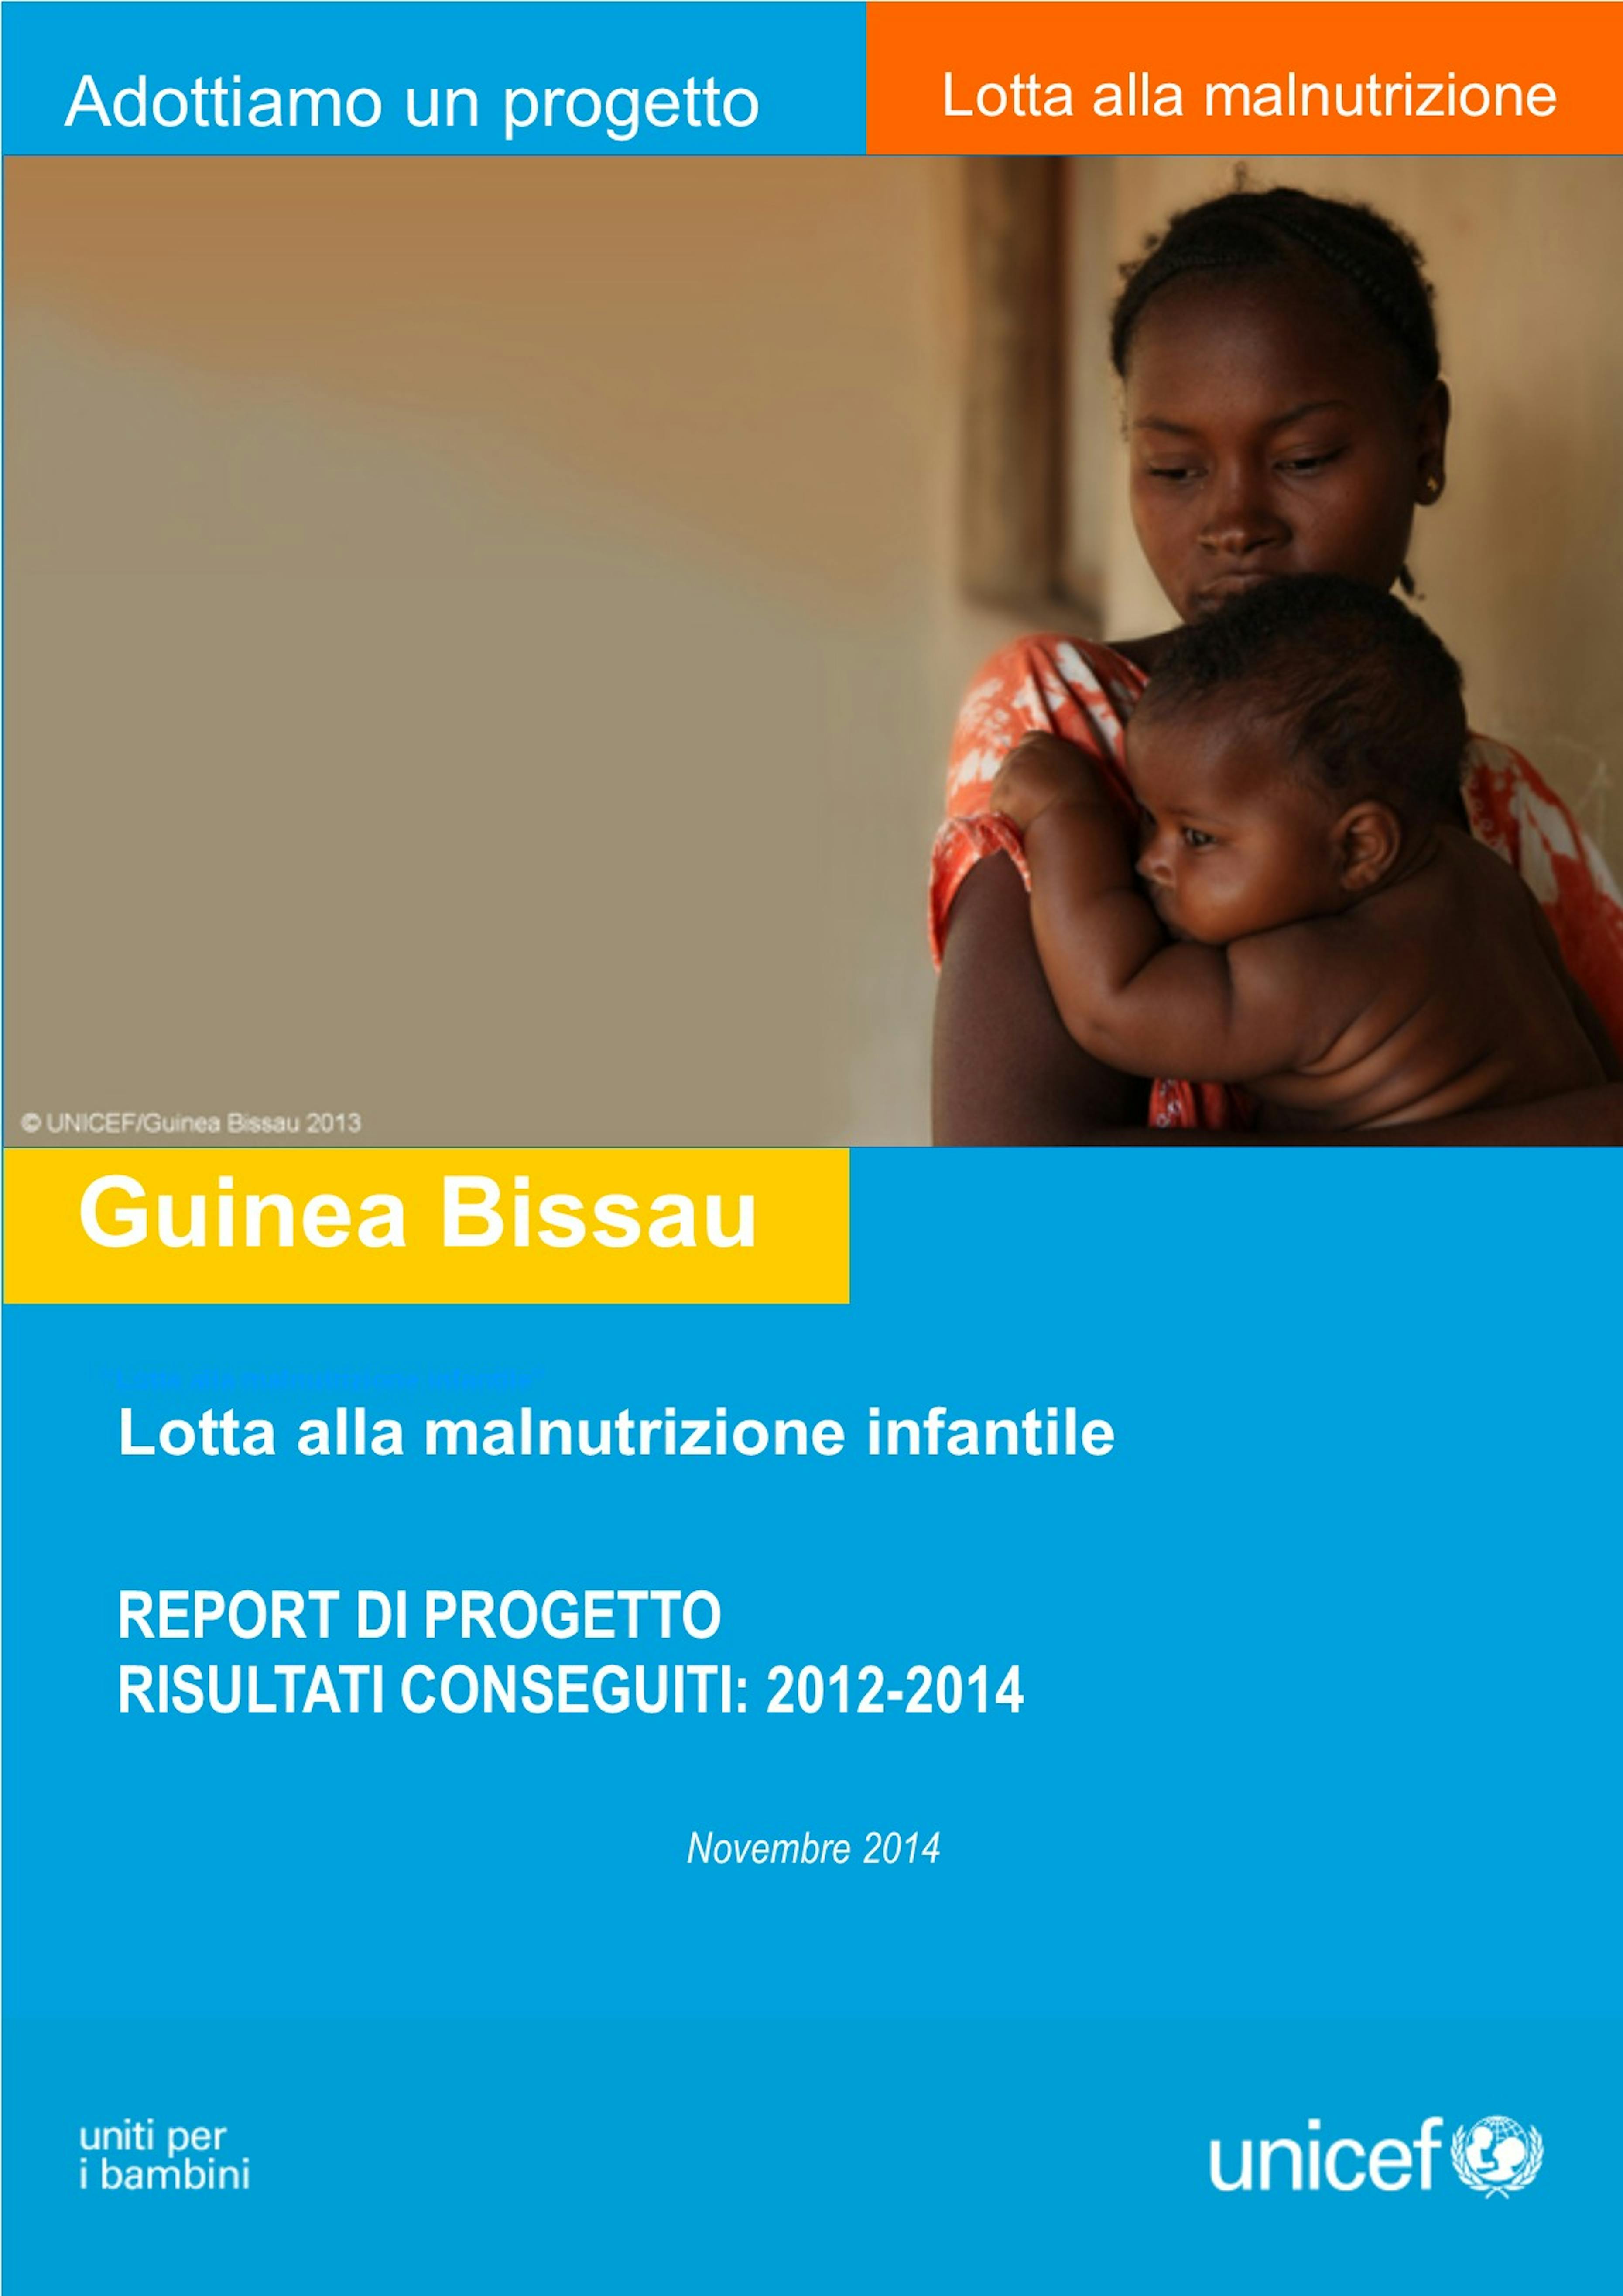 Copertina_Report_GuineaBissau.jpg